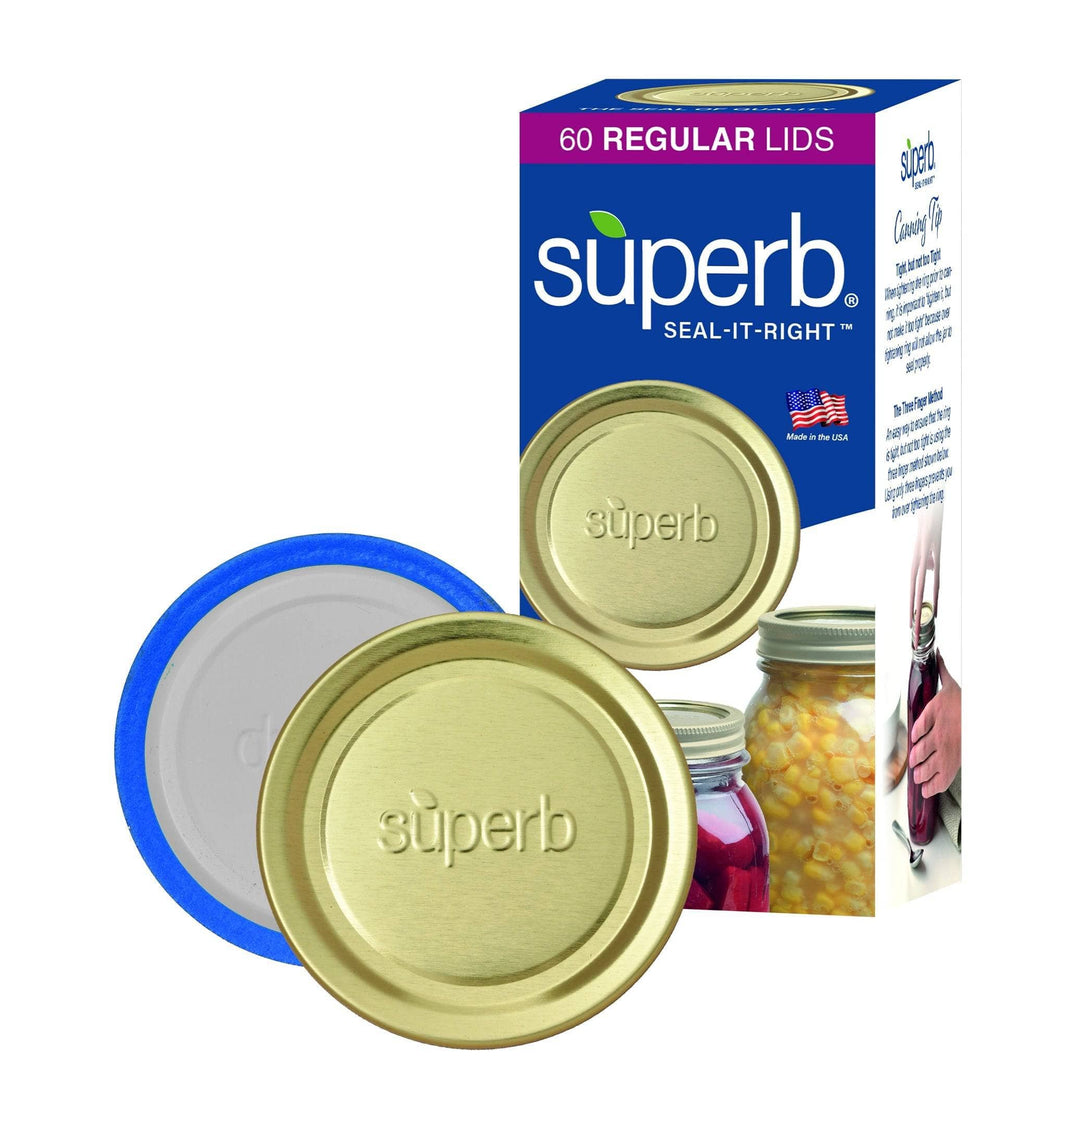 https://www.kooihousewares.com/cdn/shop/files/superb-sealing-solutions-canning-superb-canning-lids-regular-mouth-mason-jar-lids-60-lids-31454244175907.jpg?v=1691858706&width=1080